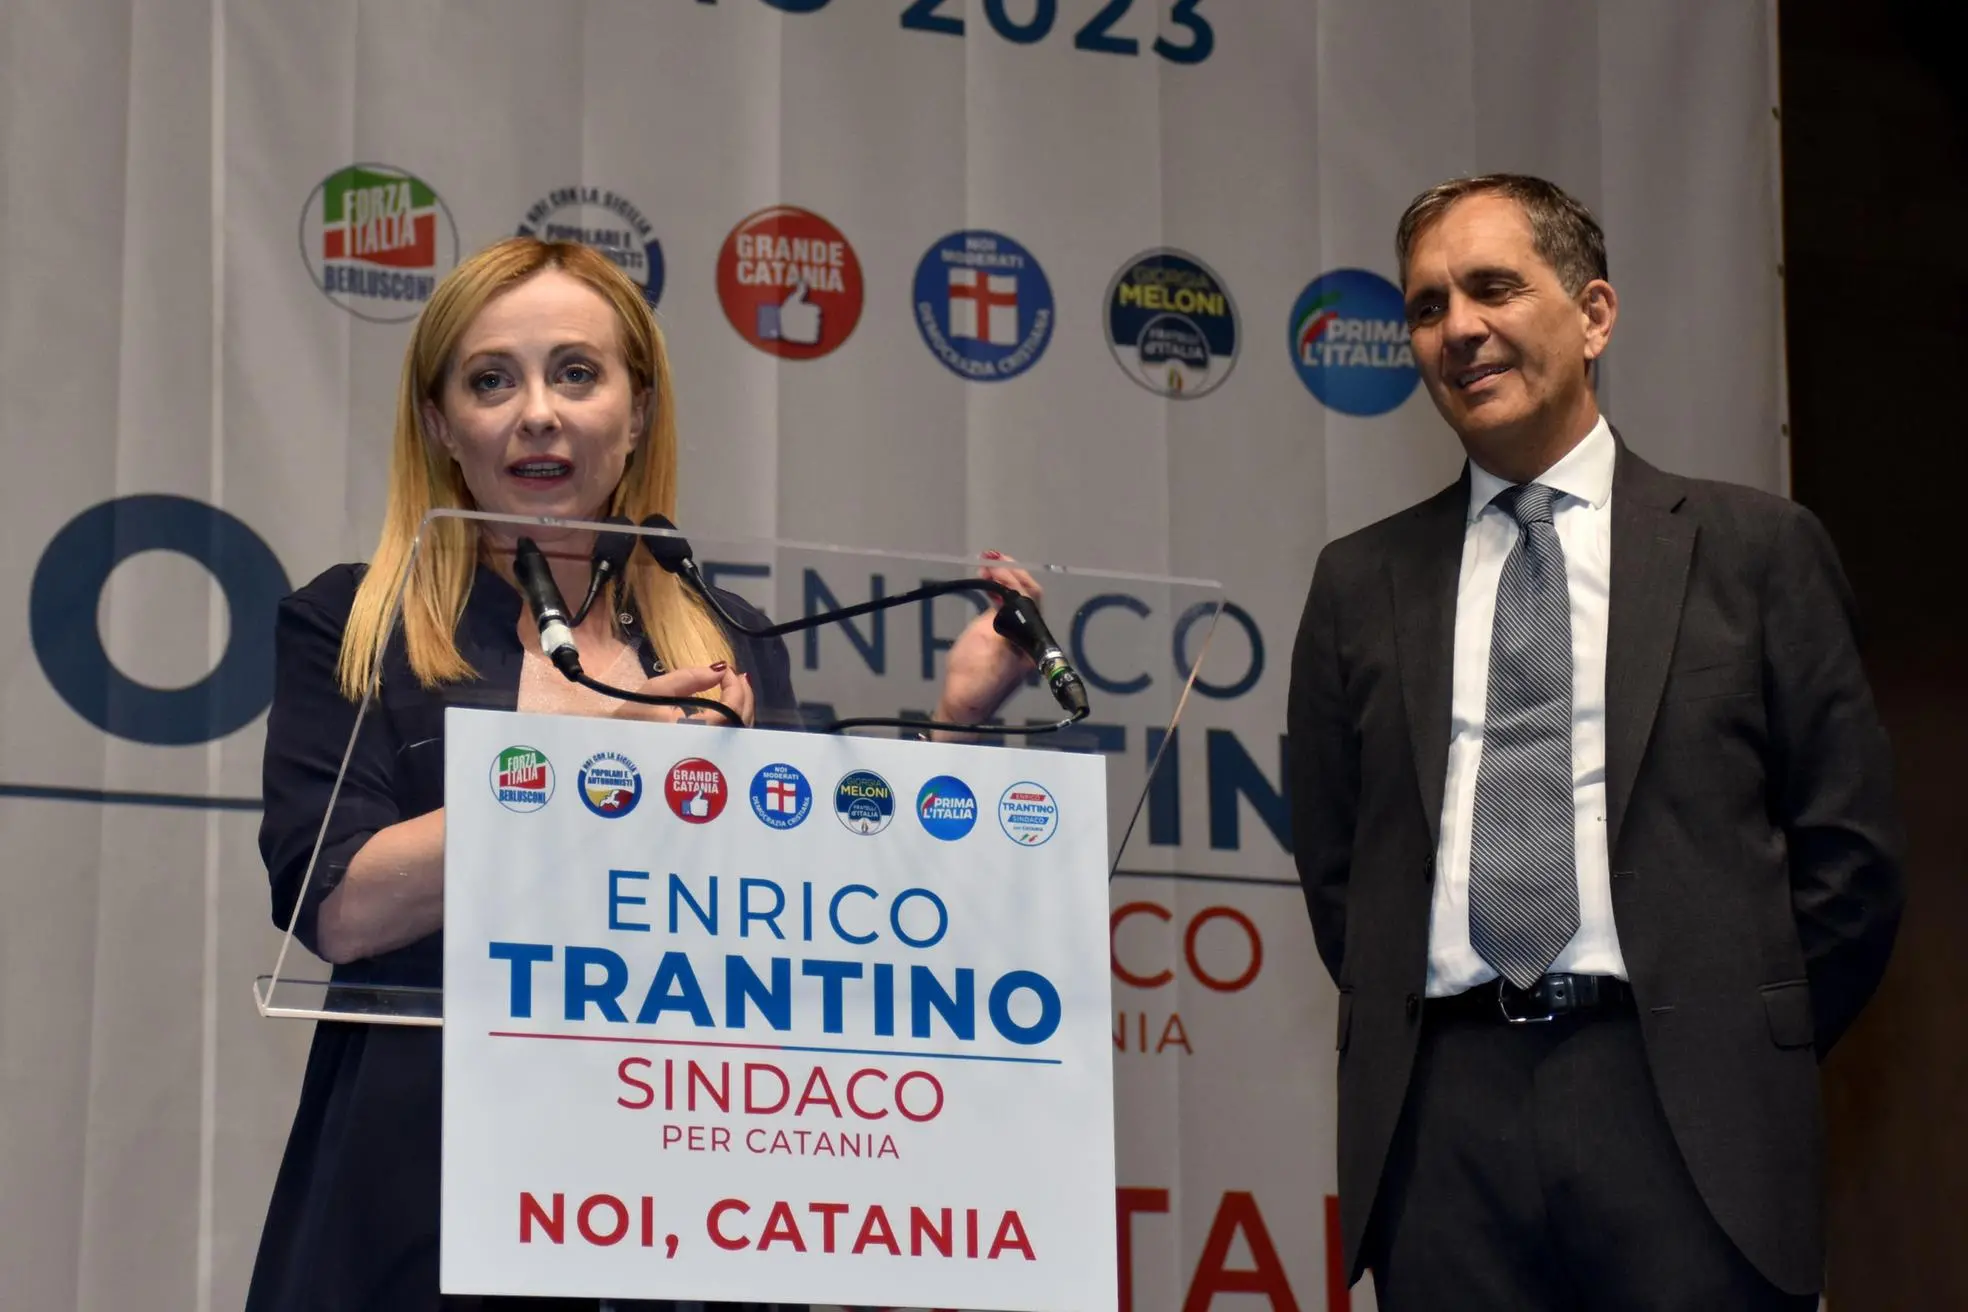 Giorgia Meloni con Enrico Trantino, eletto sindaco a Catania (Ansa)